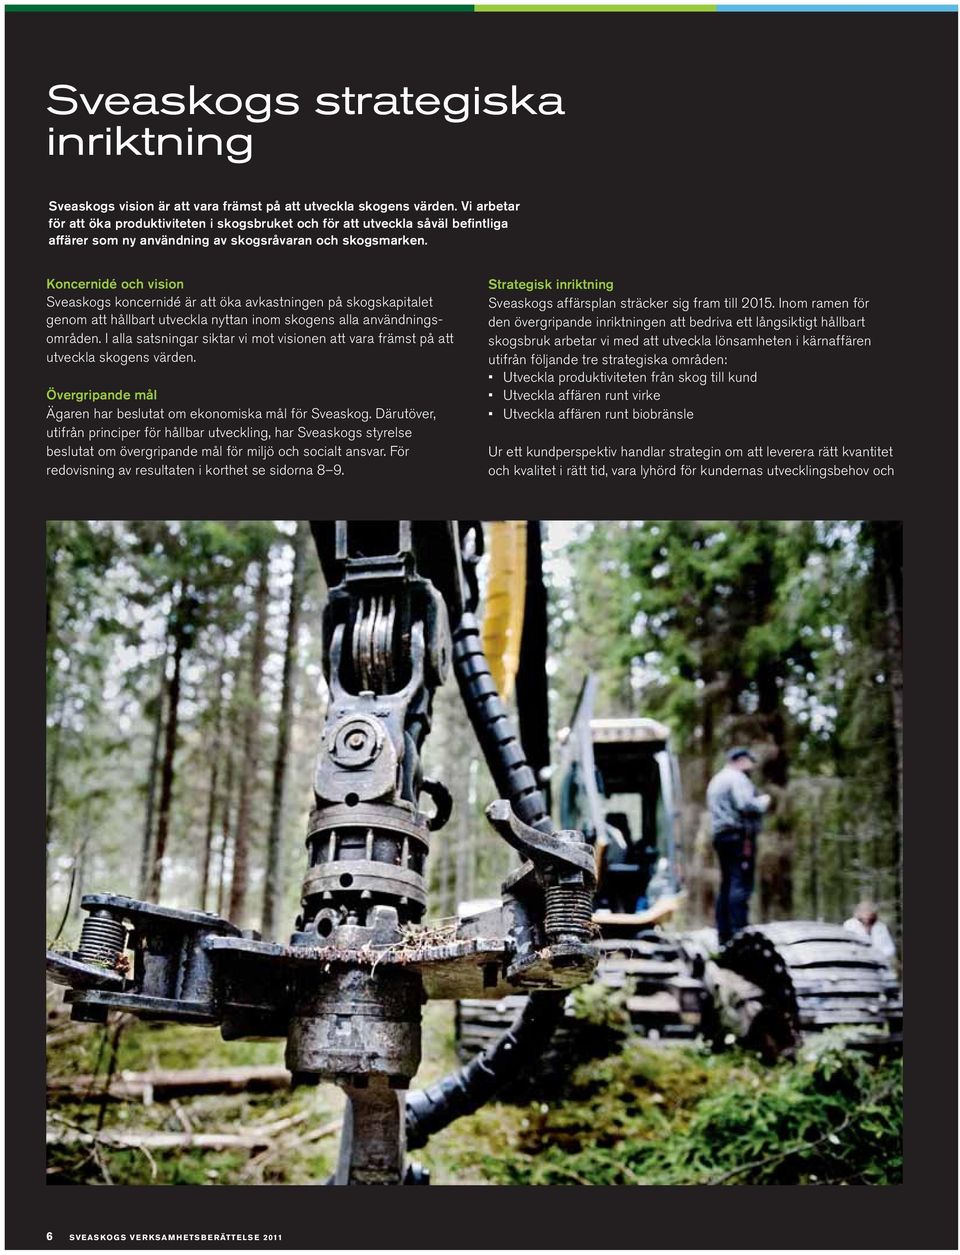 Koncernidé och vision Sveaskogs koncernidé är att öka avkastningen på skogskapitalet genom att hållbart utveckla nyttan inom skogens alla användningsområden.